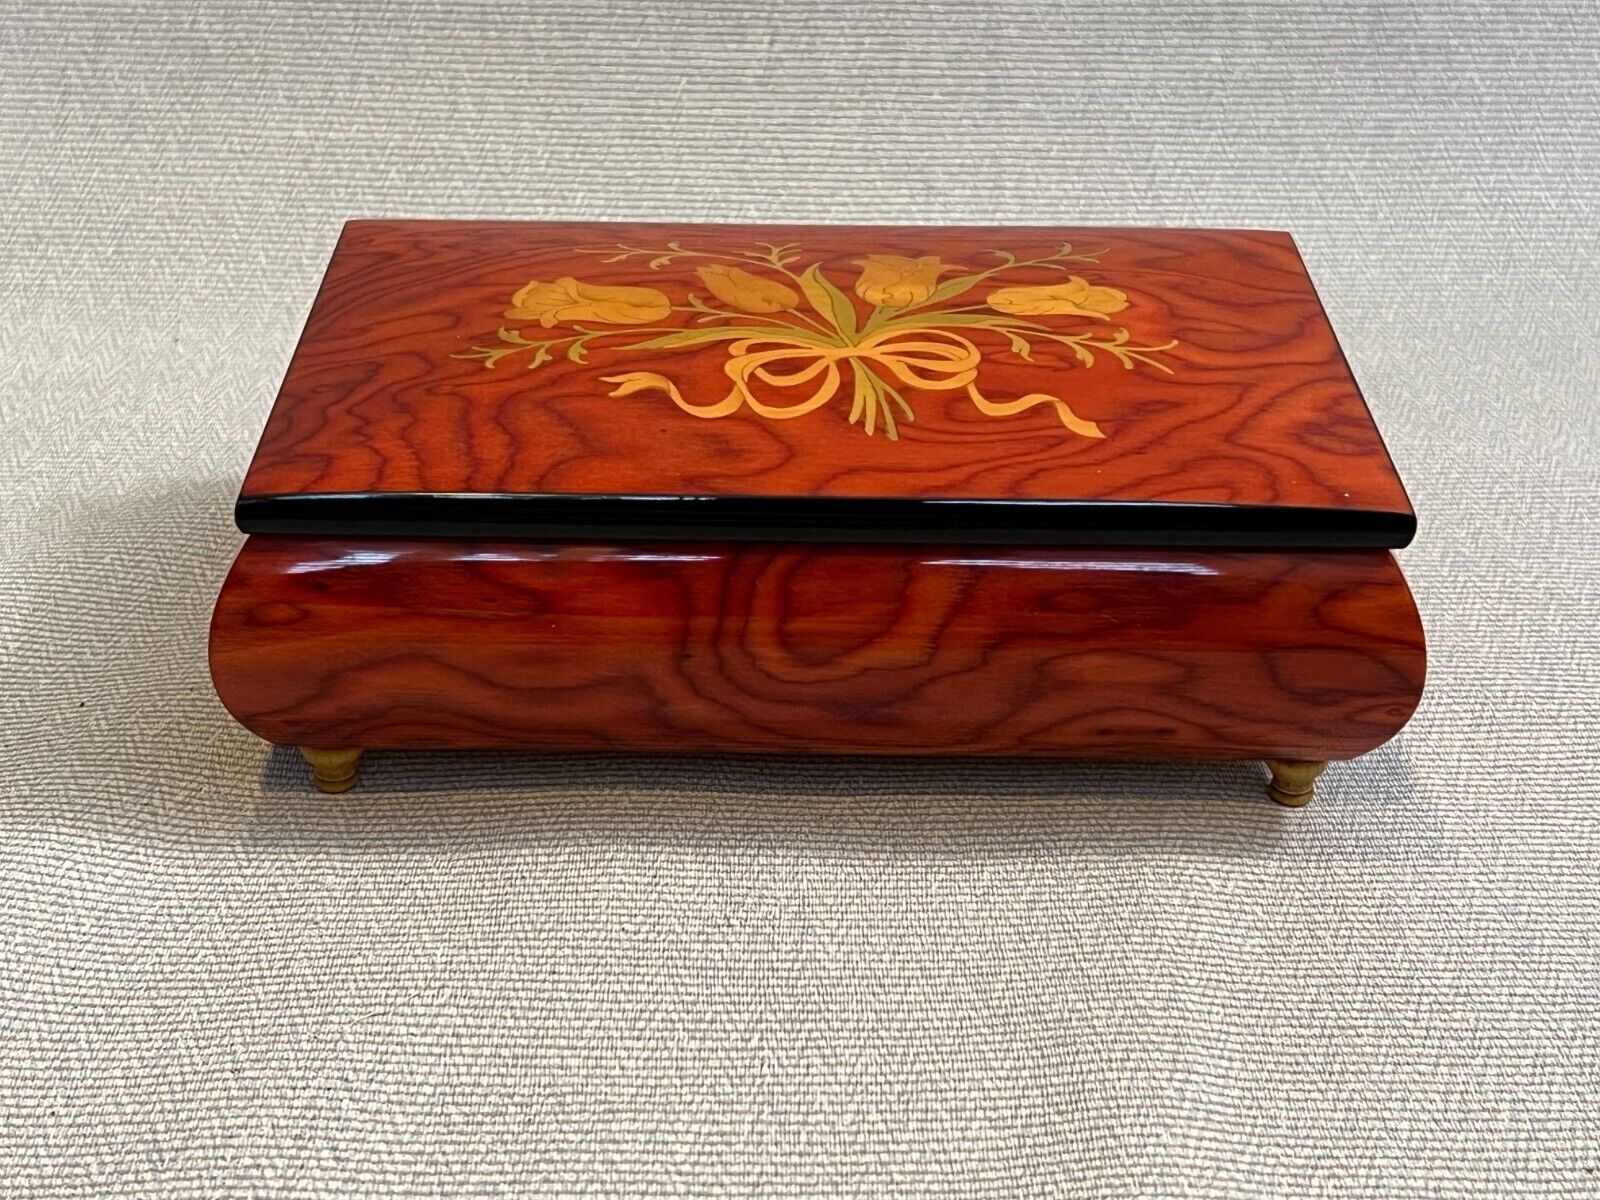 Ercolano l'arte del legno Inlaid Wooden Music Box, Made in Italy, Sorrento